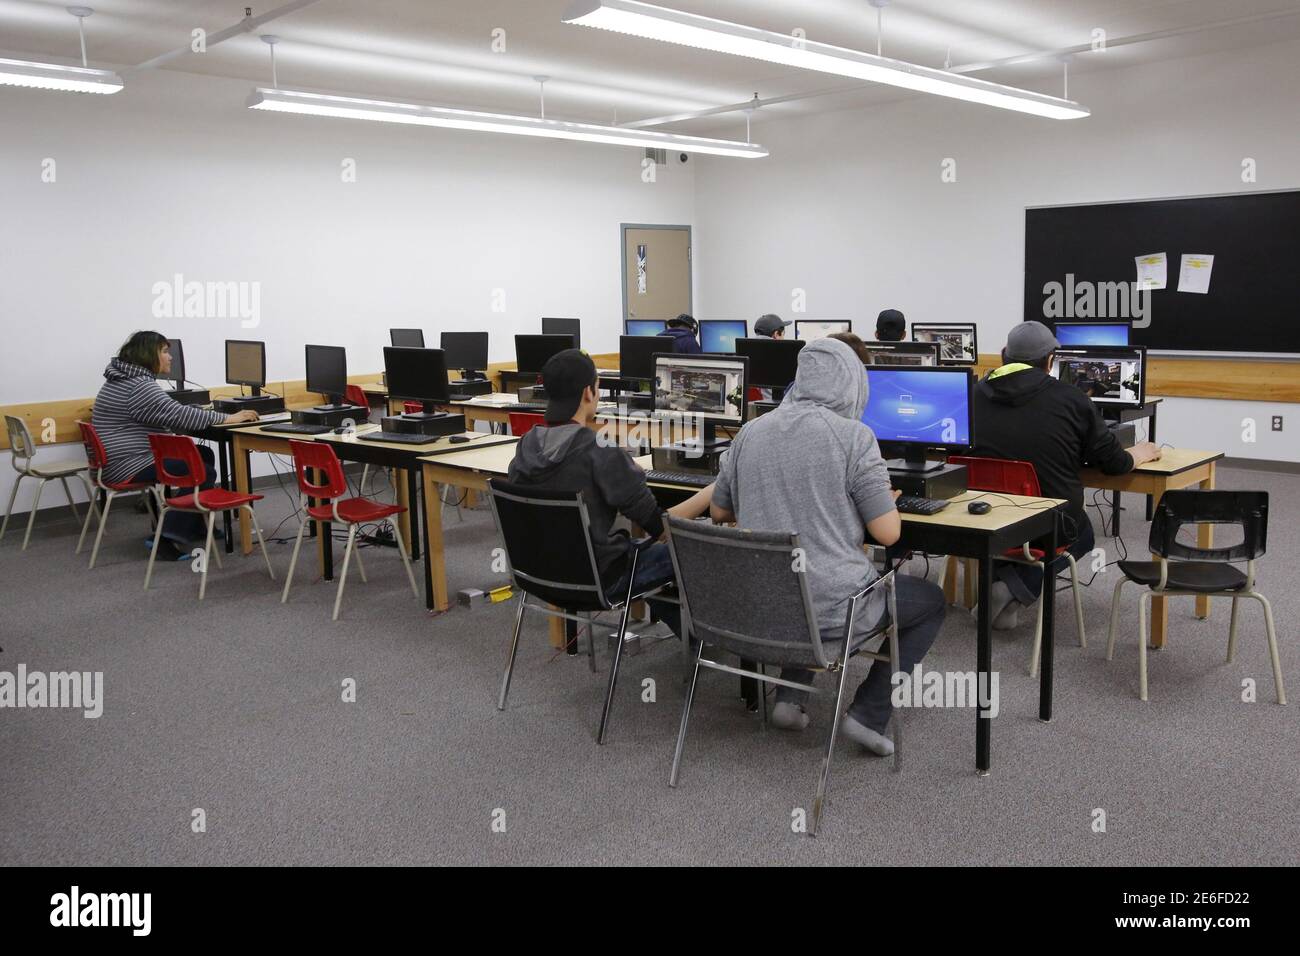 Les élèves utilisent des ordinateurs à l'école secondaire Vezina de la première nation Attawapiskat, dans le nord de l'Ontario, au Canada, le 15 avril 2016. REUTERS/Chris Wattie Banque D'Images